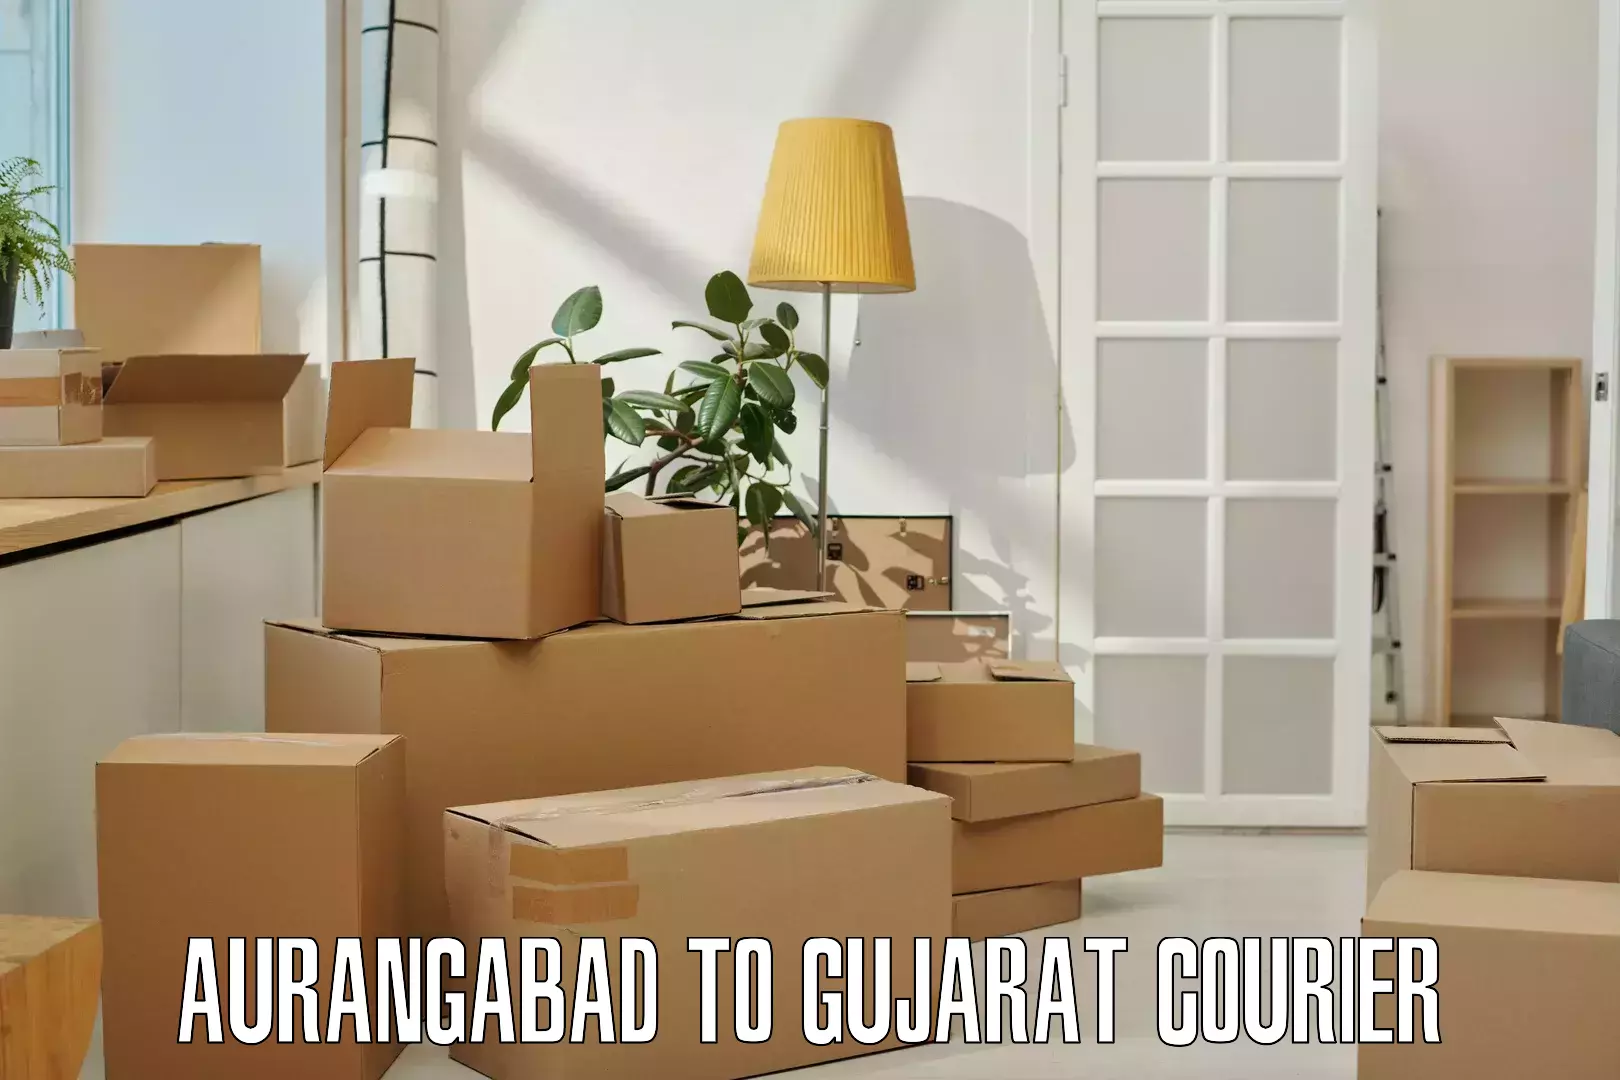 Quick dispatch service Aurangabad to Gandhinagar